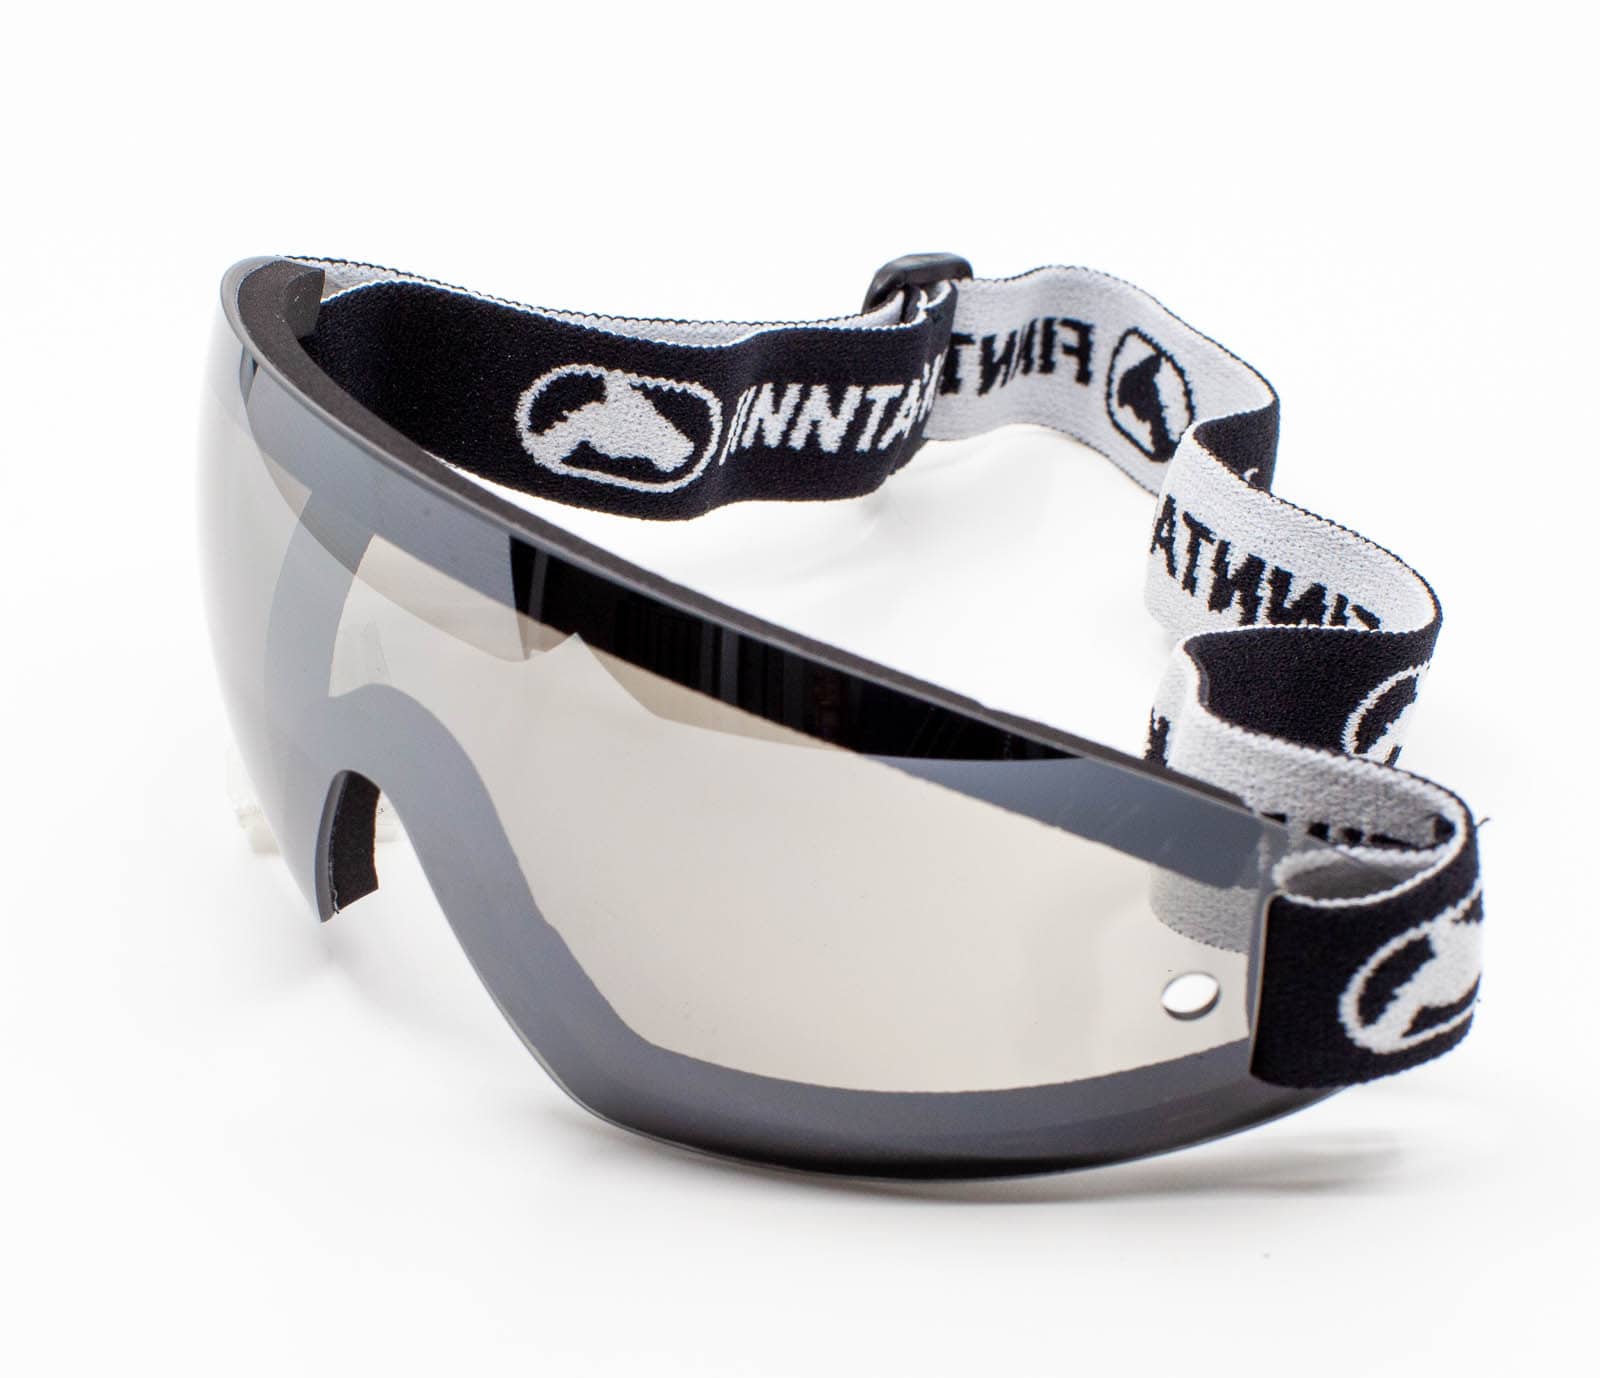 Finntack Pro løpsbriller